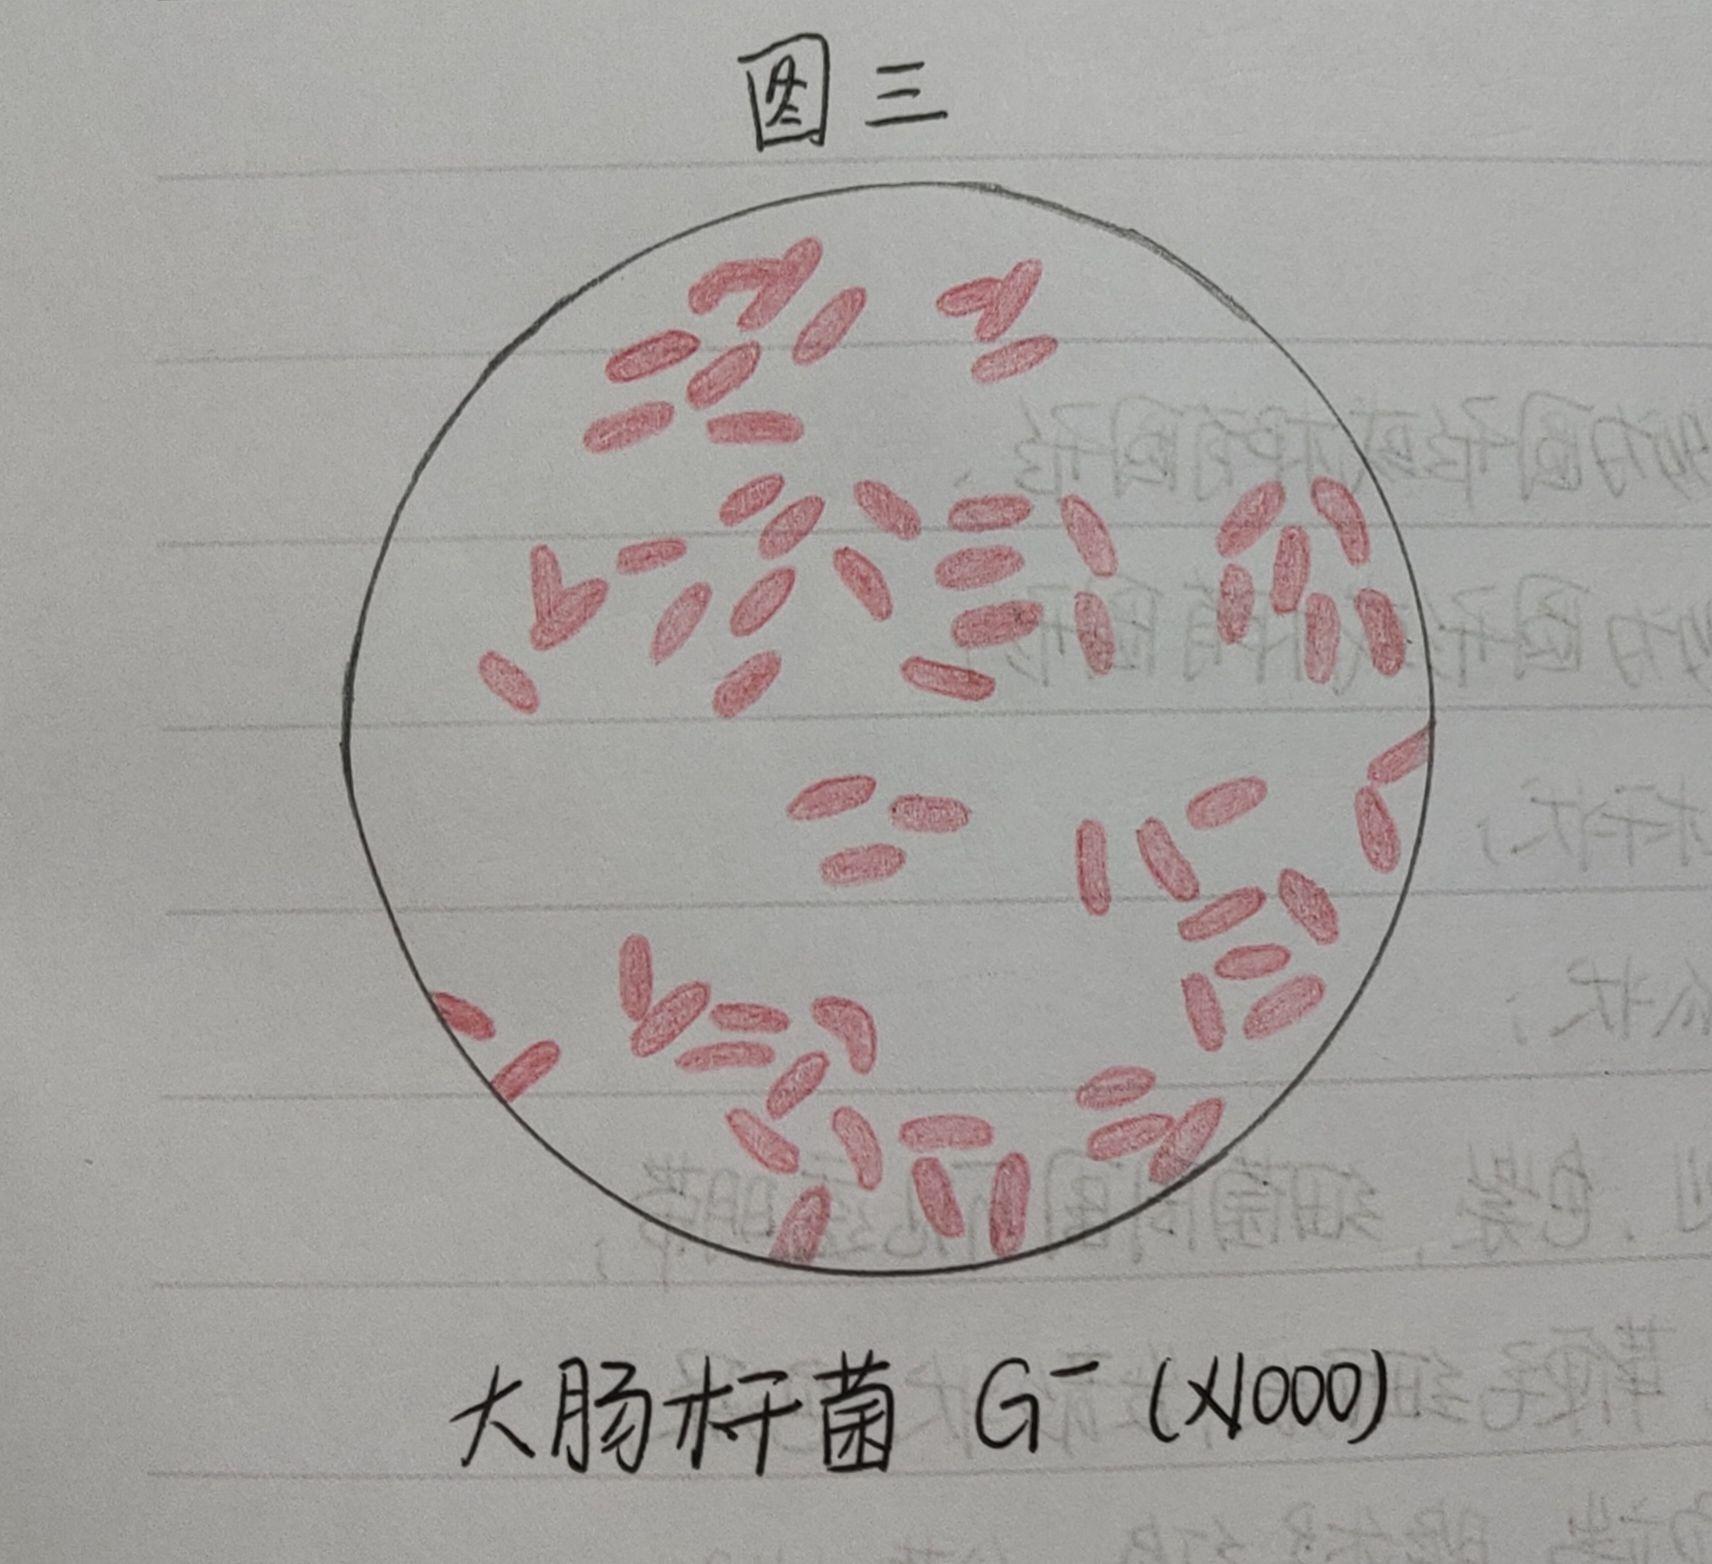 细菌三型100倍手绘图-图库-五毛网